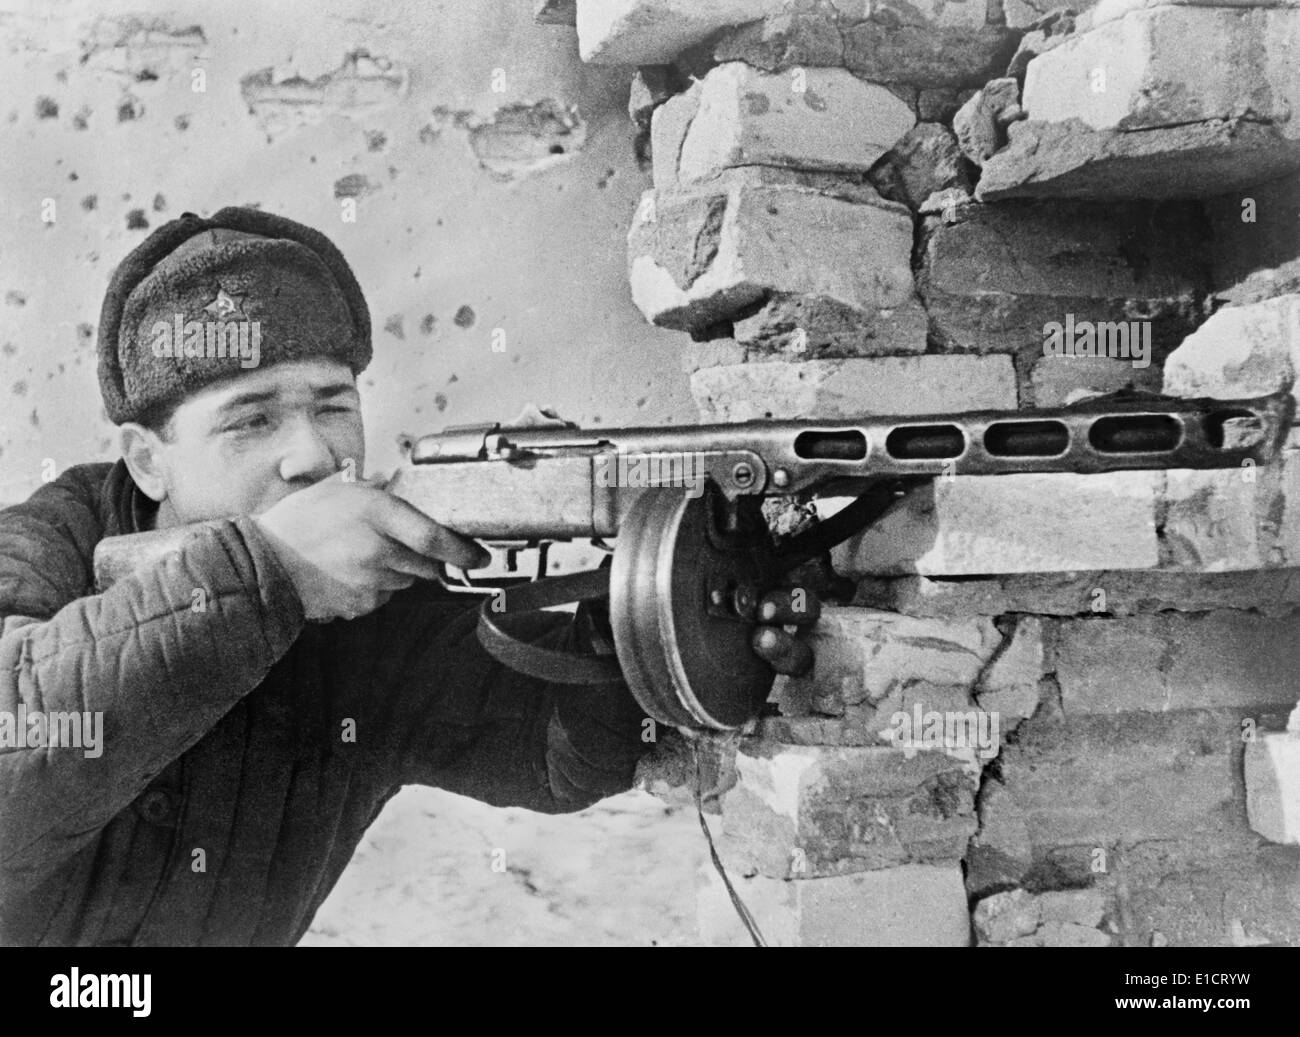 Bataille de Stalingrad, la Première Guerre mondiale 2. Mitrailleur de l'Armée rouge mur criblé de balles. 1942 oct.-fév. 1943. Photo par Georgii Zelma. Banque D'Images